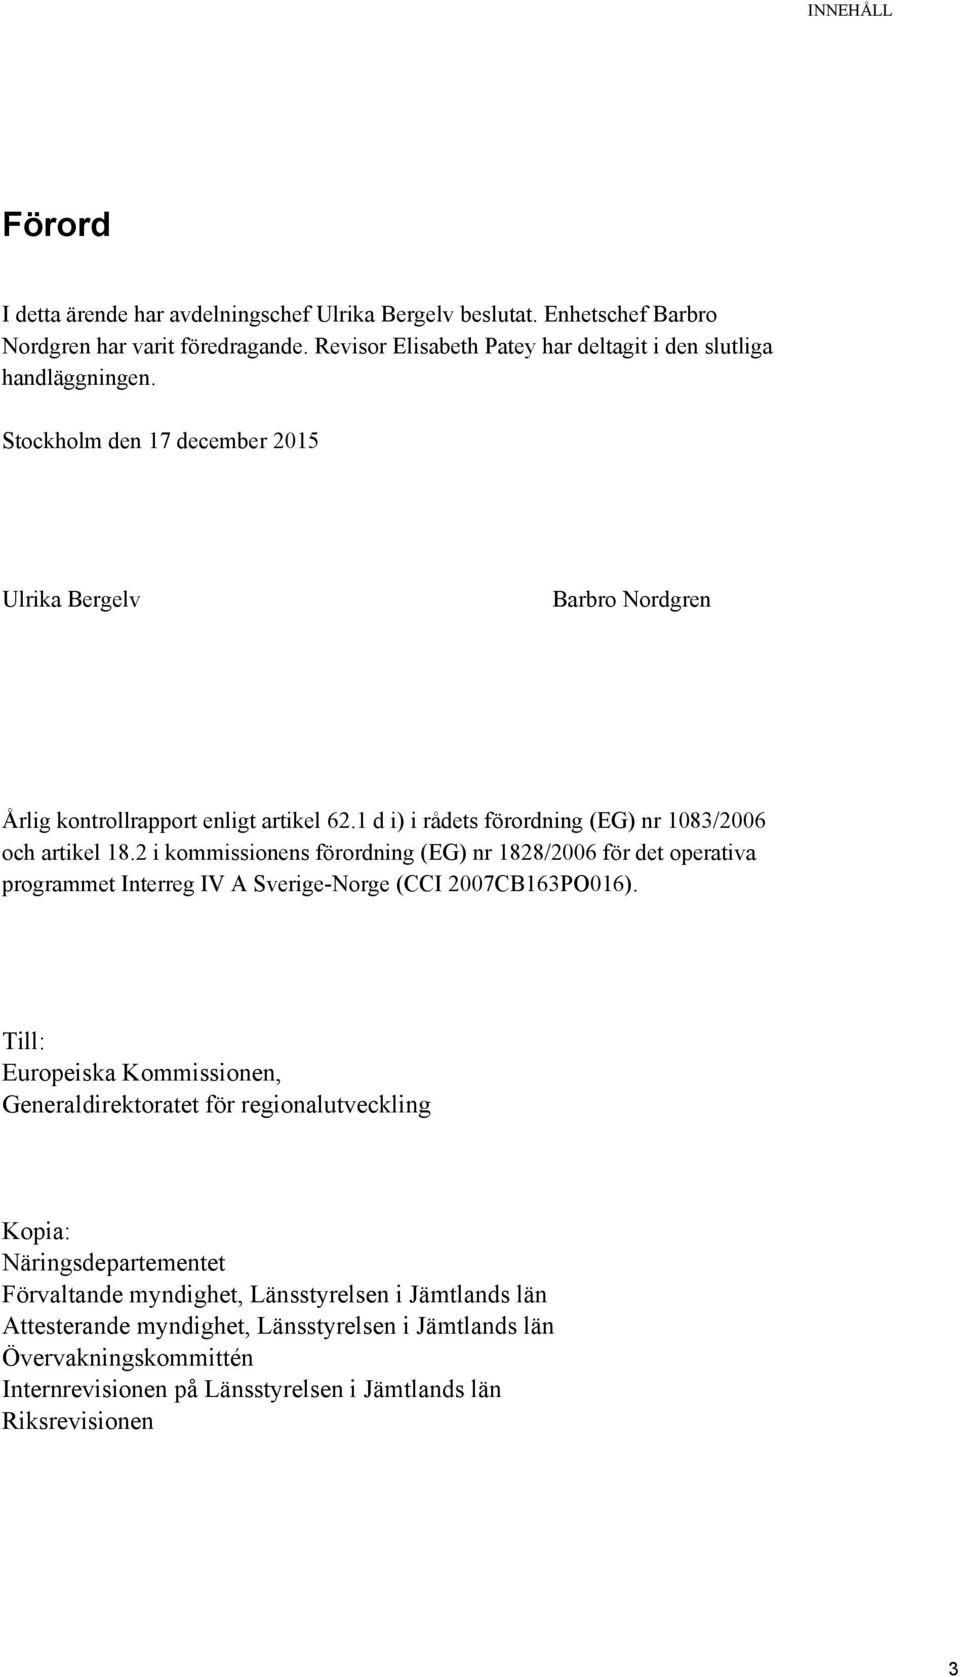 2 i kommissionens förordning (EG) nr 1828/2006 för det operativa programmet Interreg IV A Sverige-Norge (CCI 2007CB163PO016).